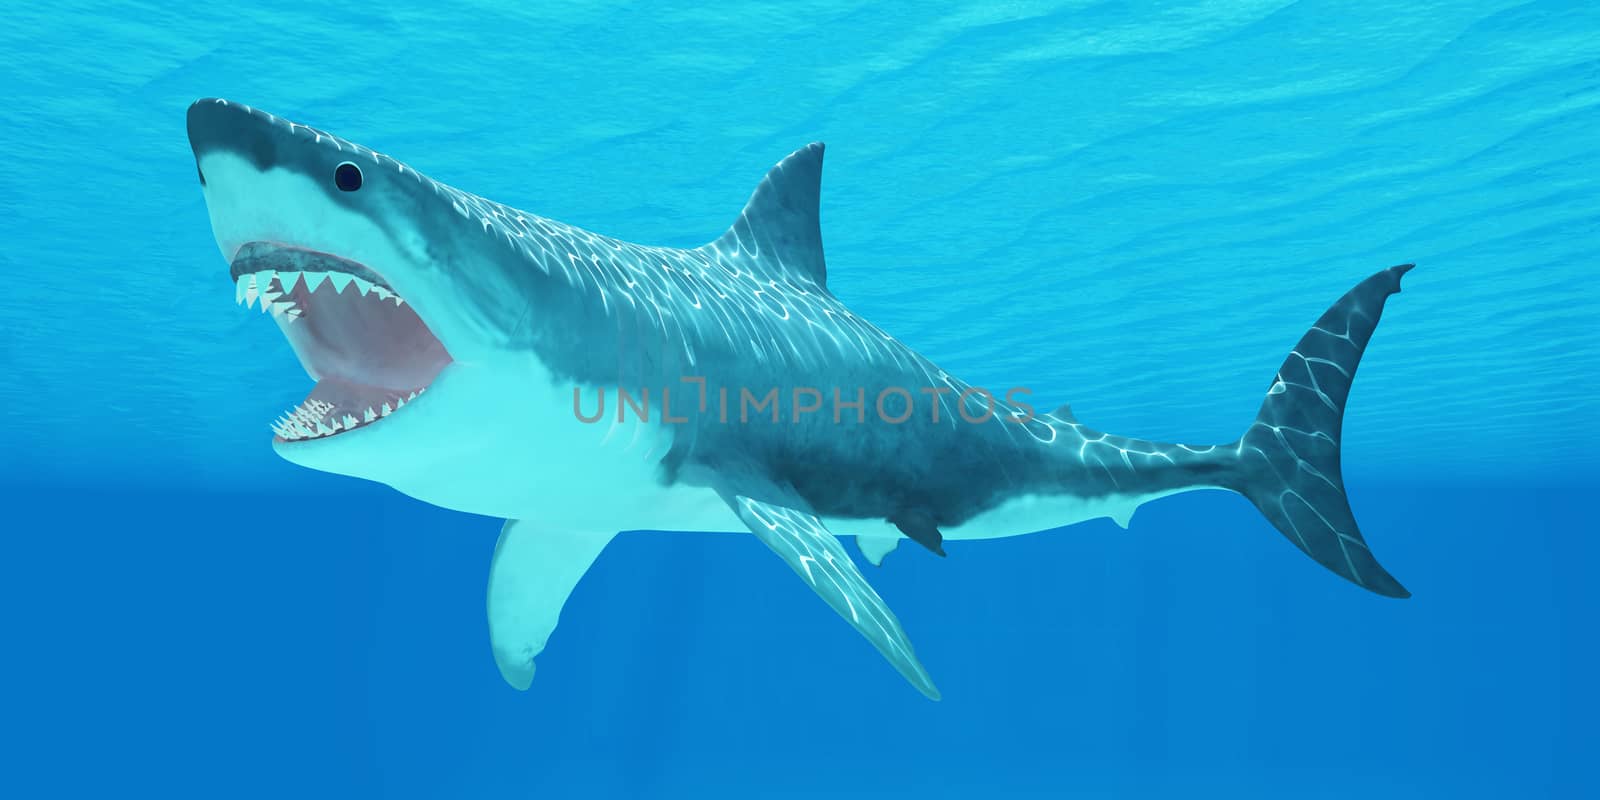 Great White Shark Underwater by Catmando